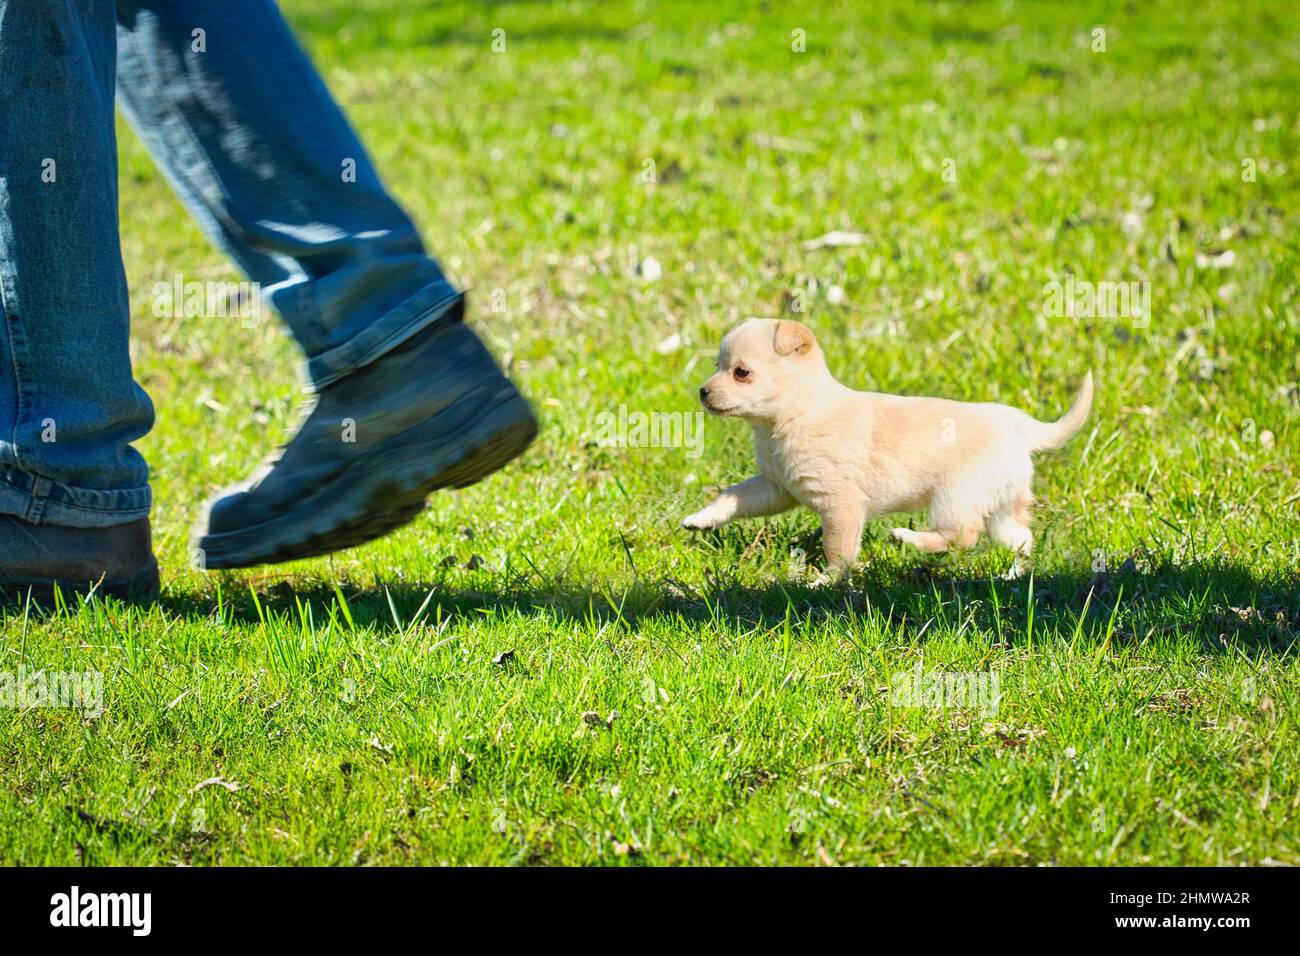 Der kleine Welpe folgt den Füßen des Besitzers auf dem grünen Gras Stockfoto